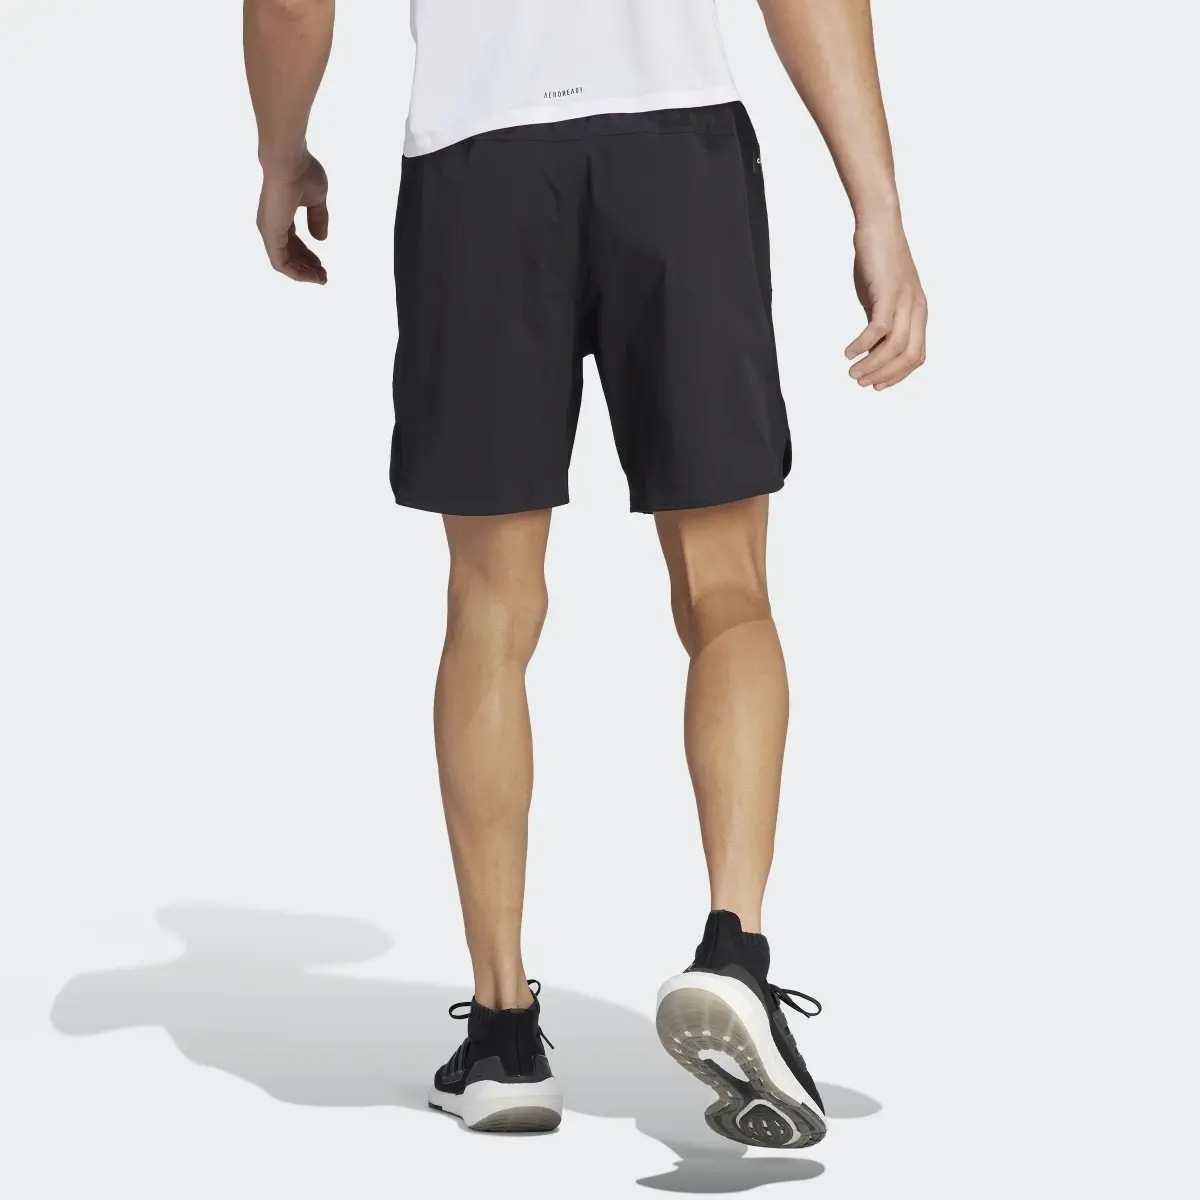 Adidas Designed 4 Training CORDURA Workout Shorts. 3